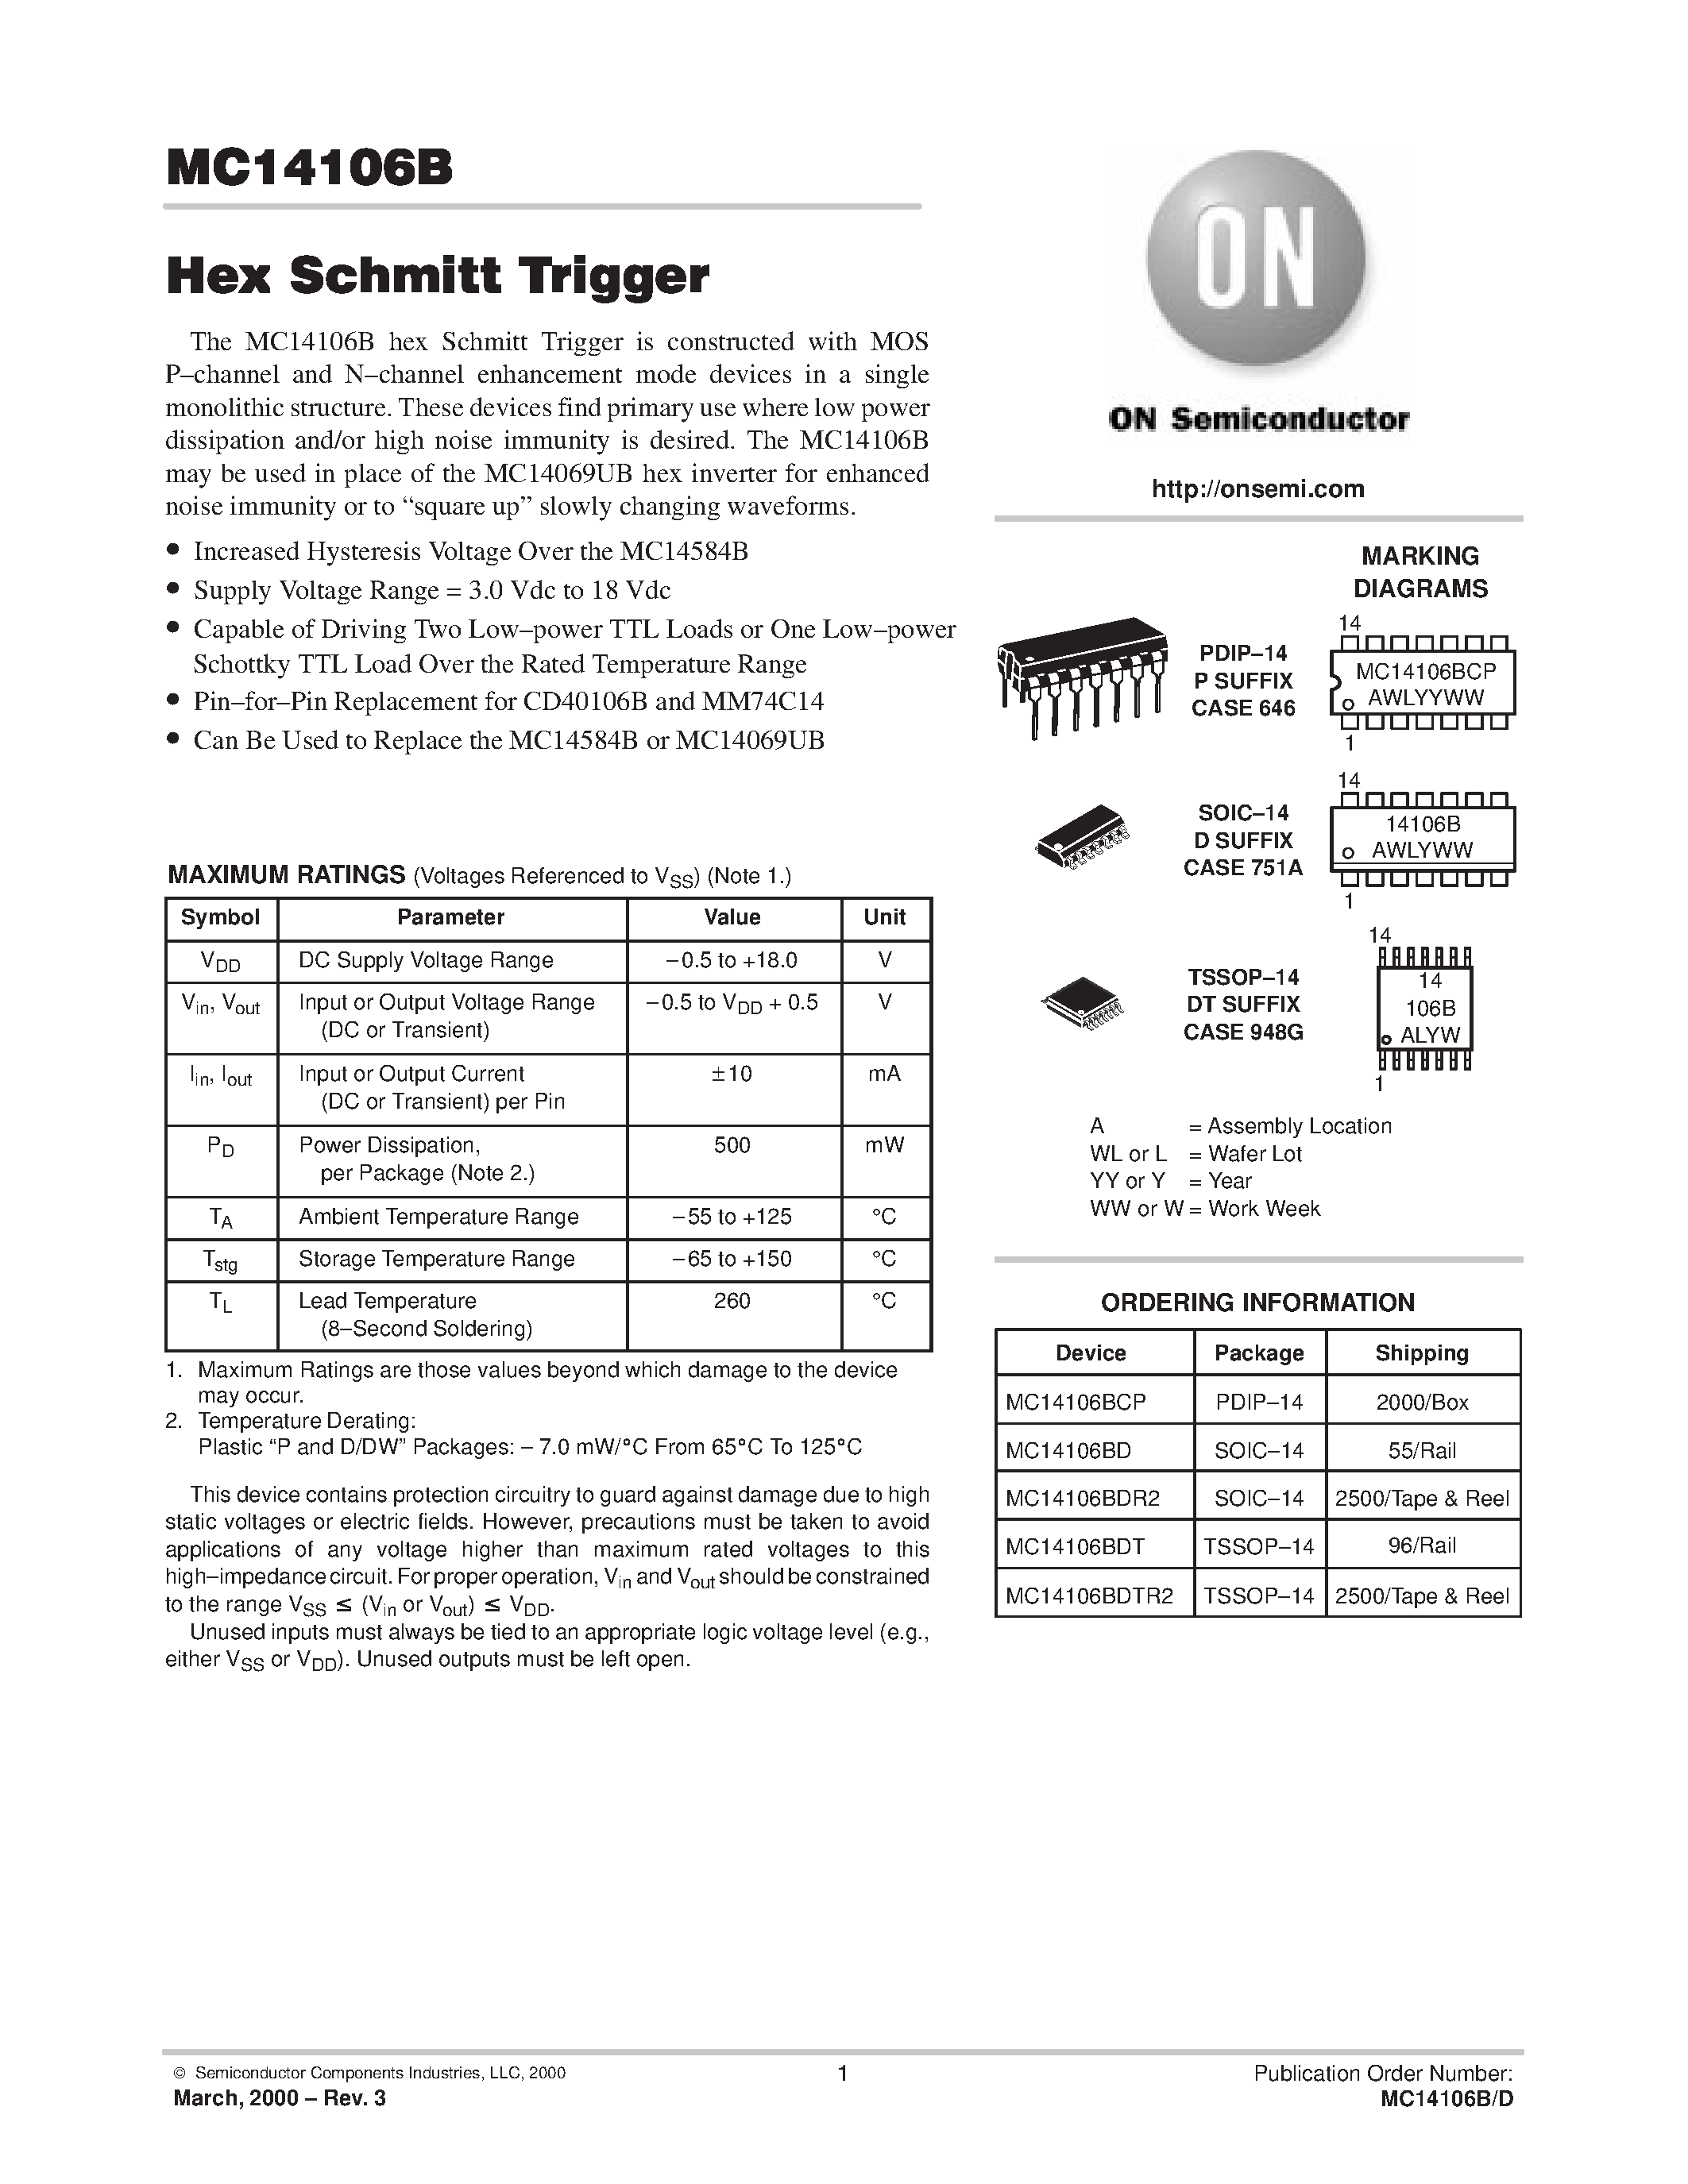 Даташит MC14106BDR2 - Hex Schmitt Trigger страница 1